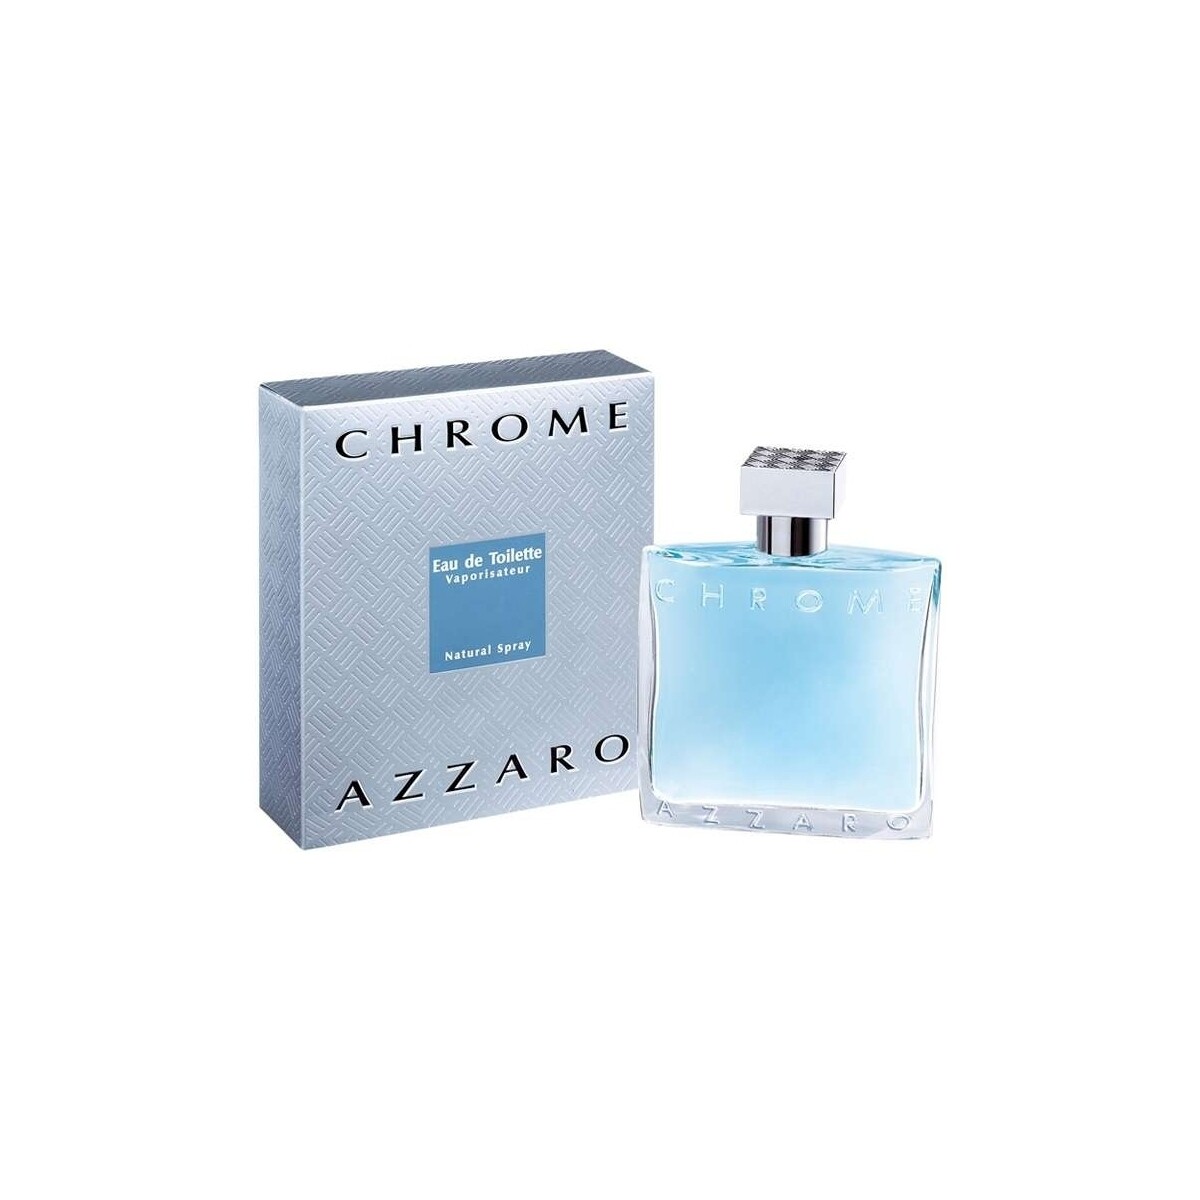 Azzaro Chrome - cologne - 200ml - spray Chrome - eau de